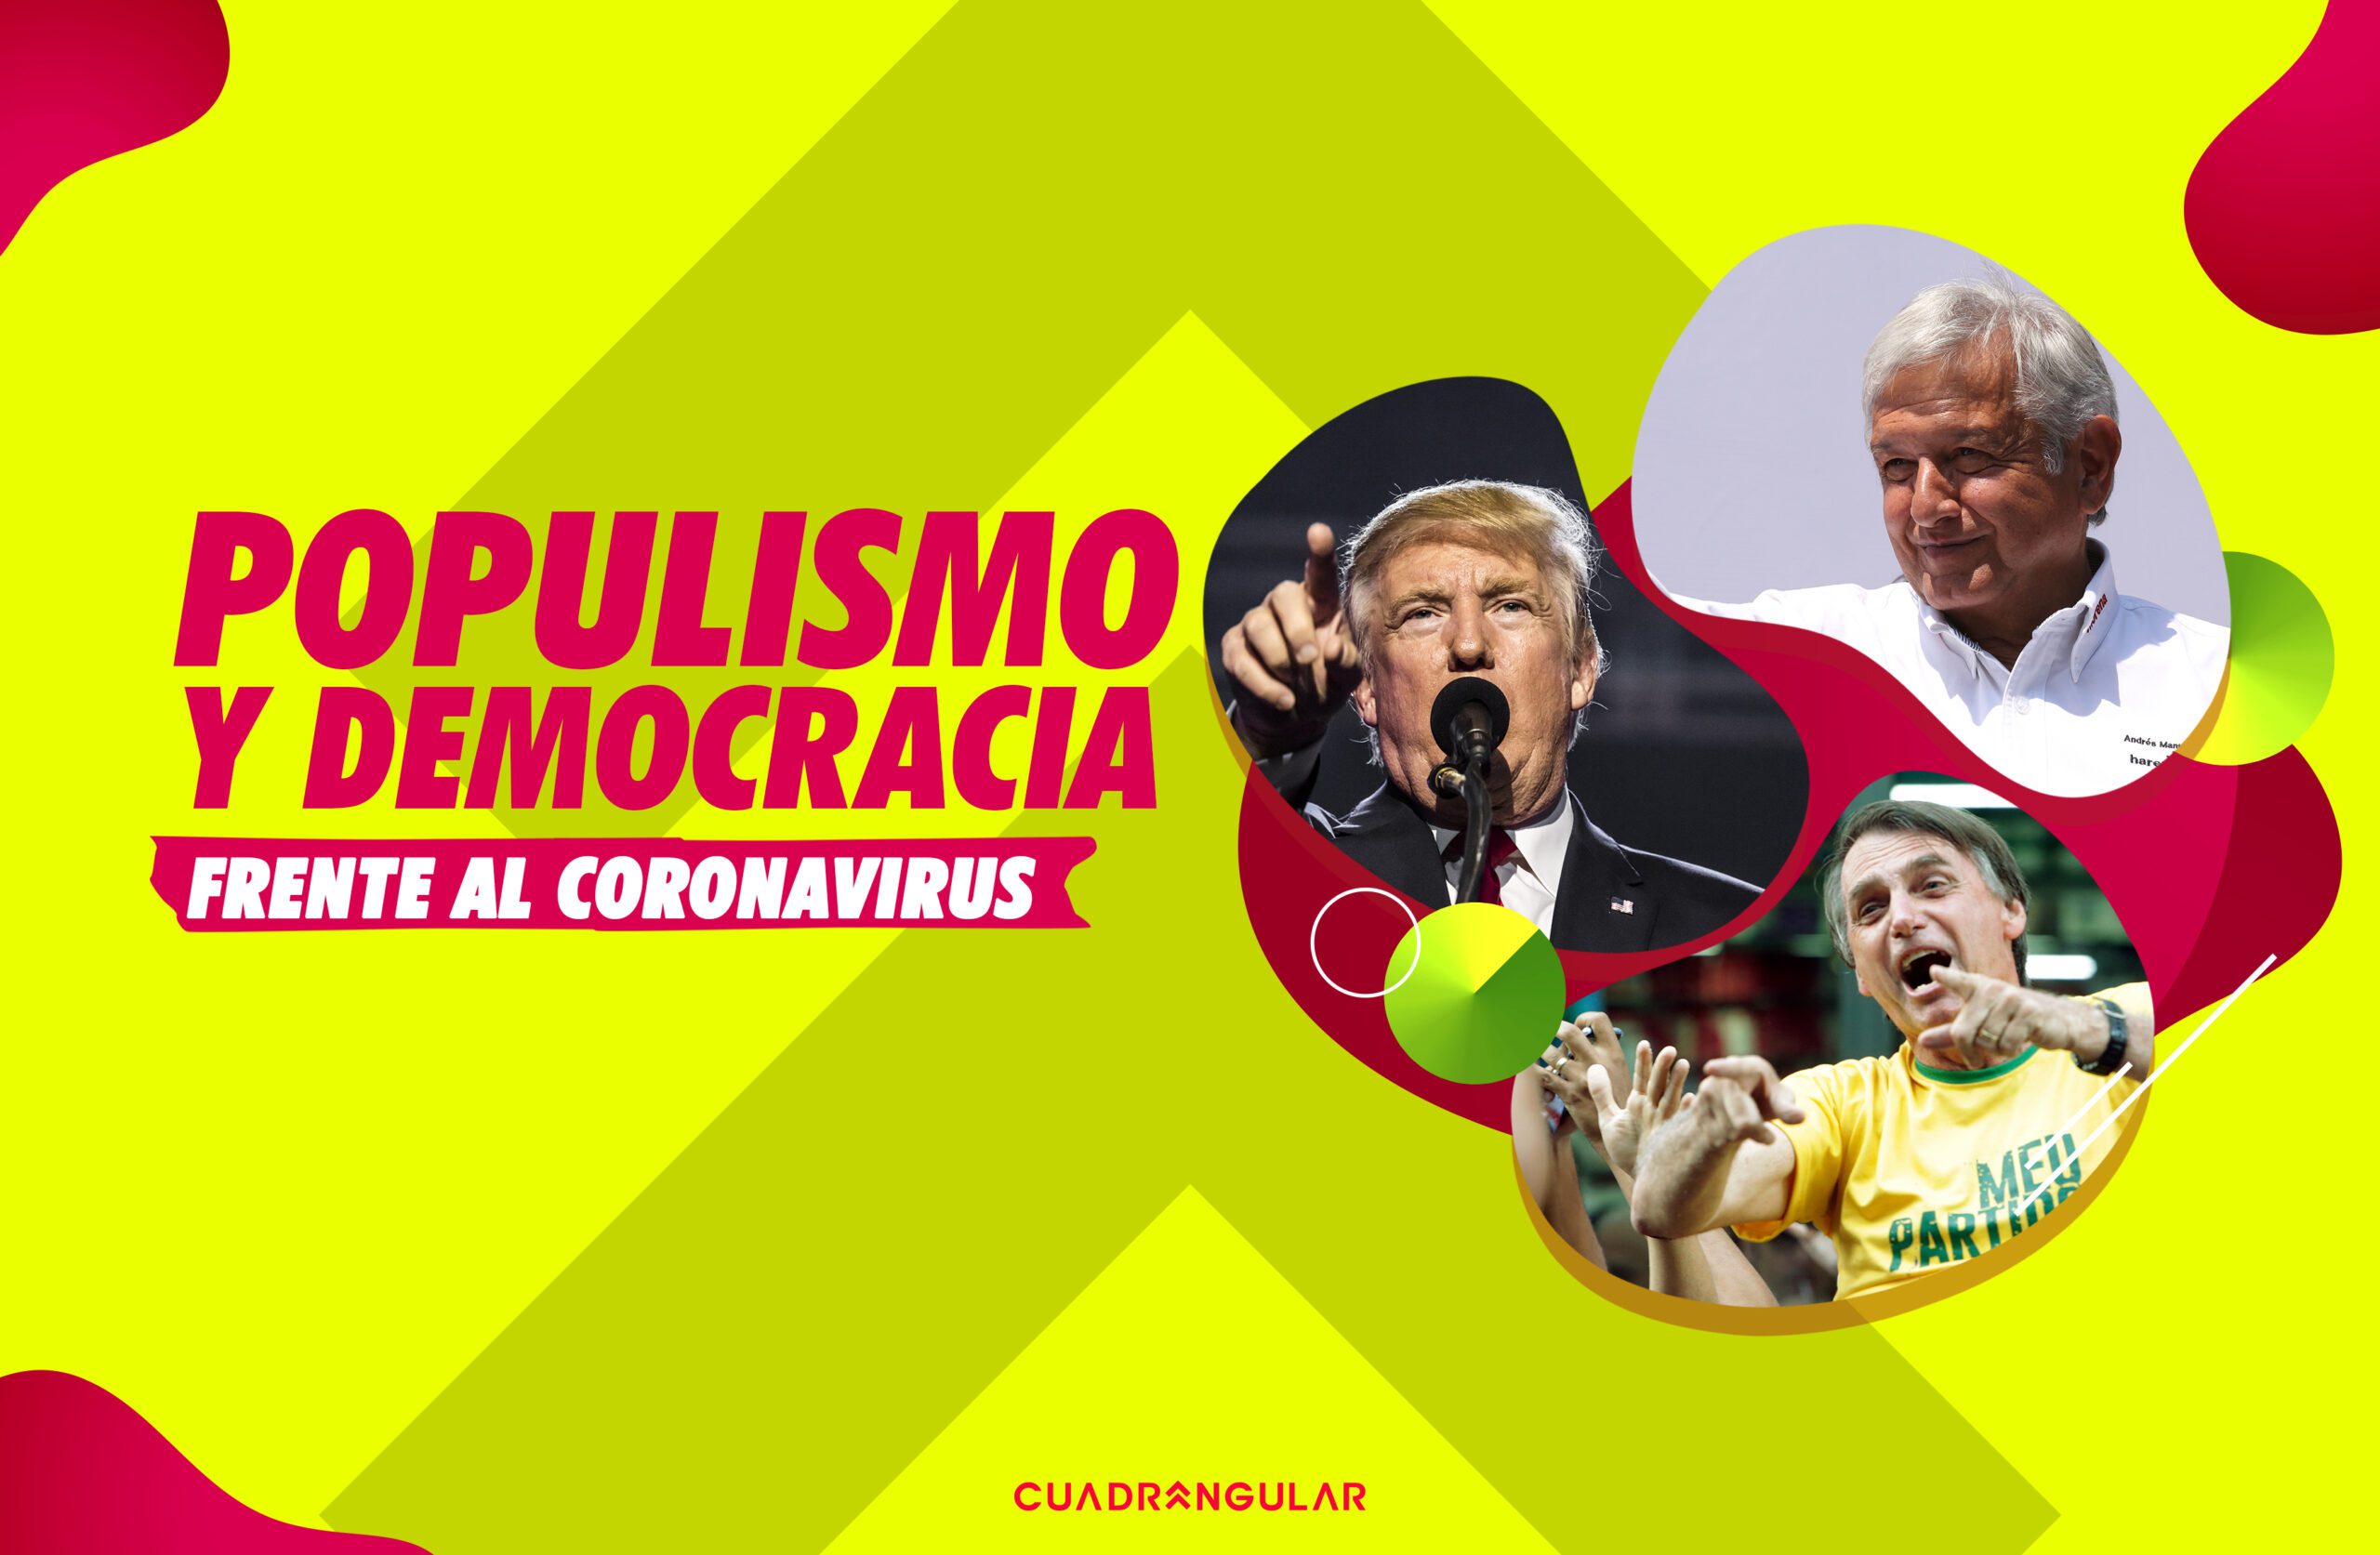 Populismo y democracia frente al Coronavirus